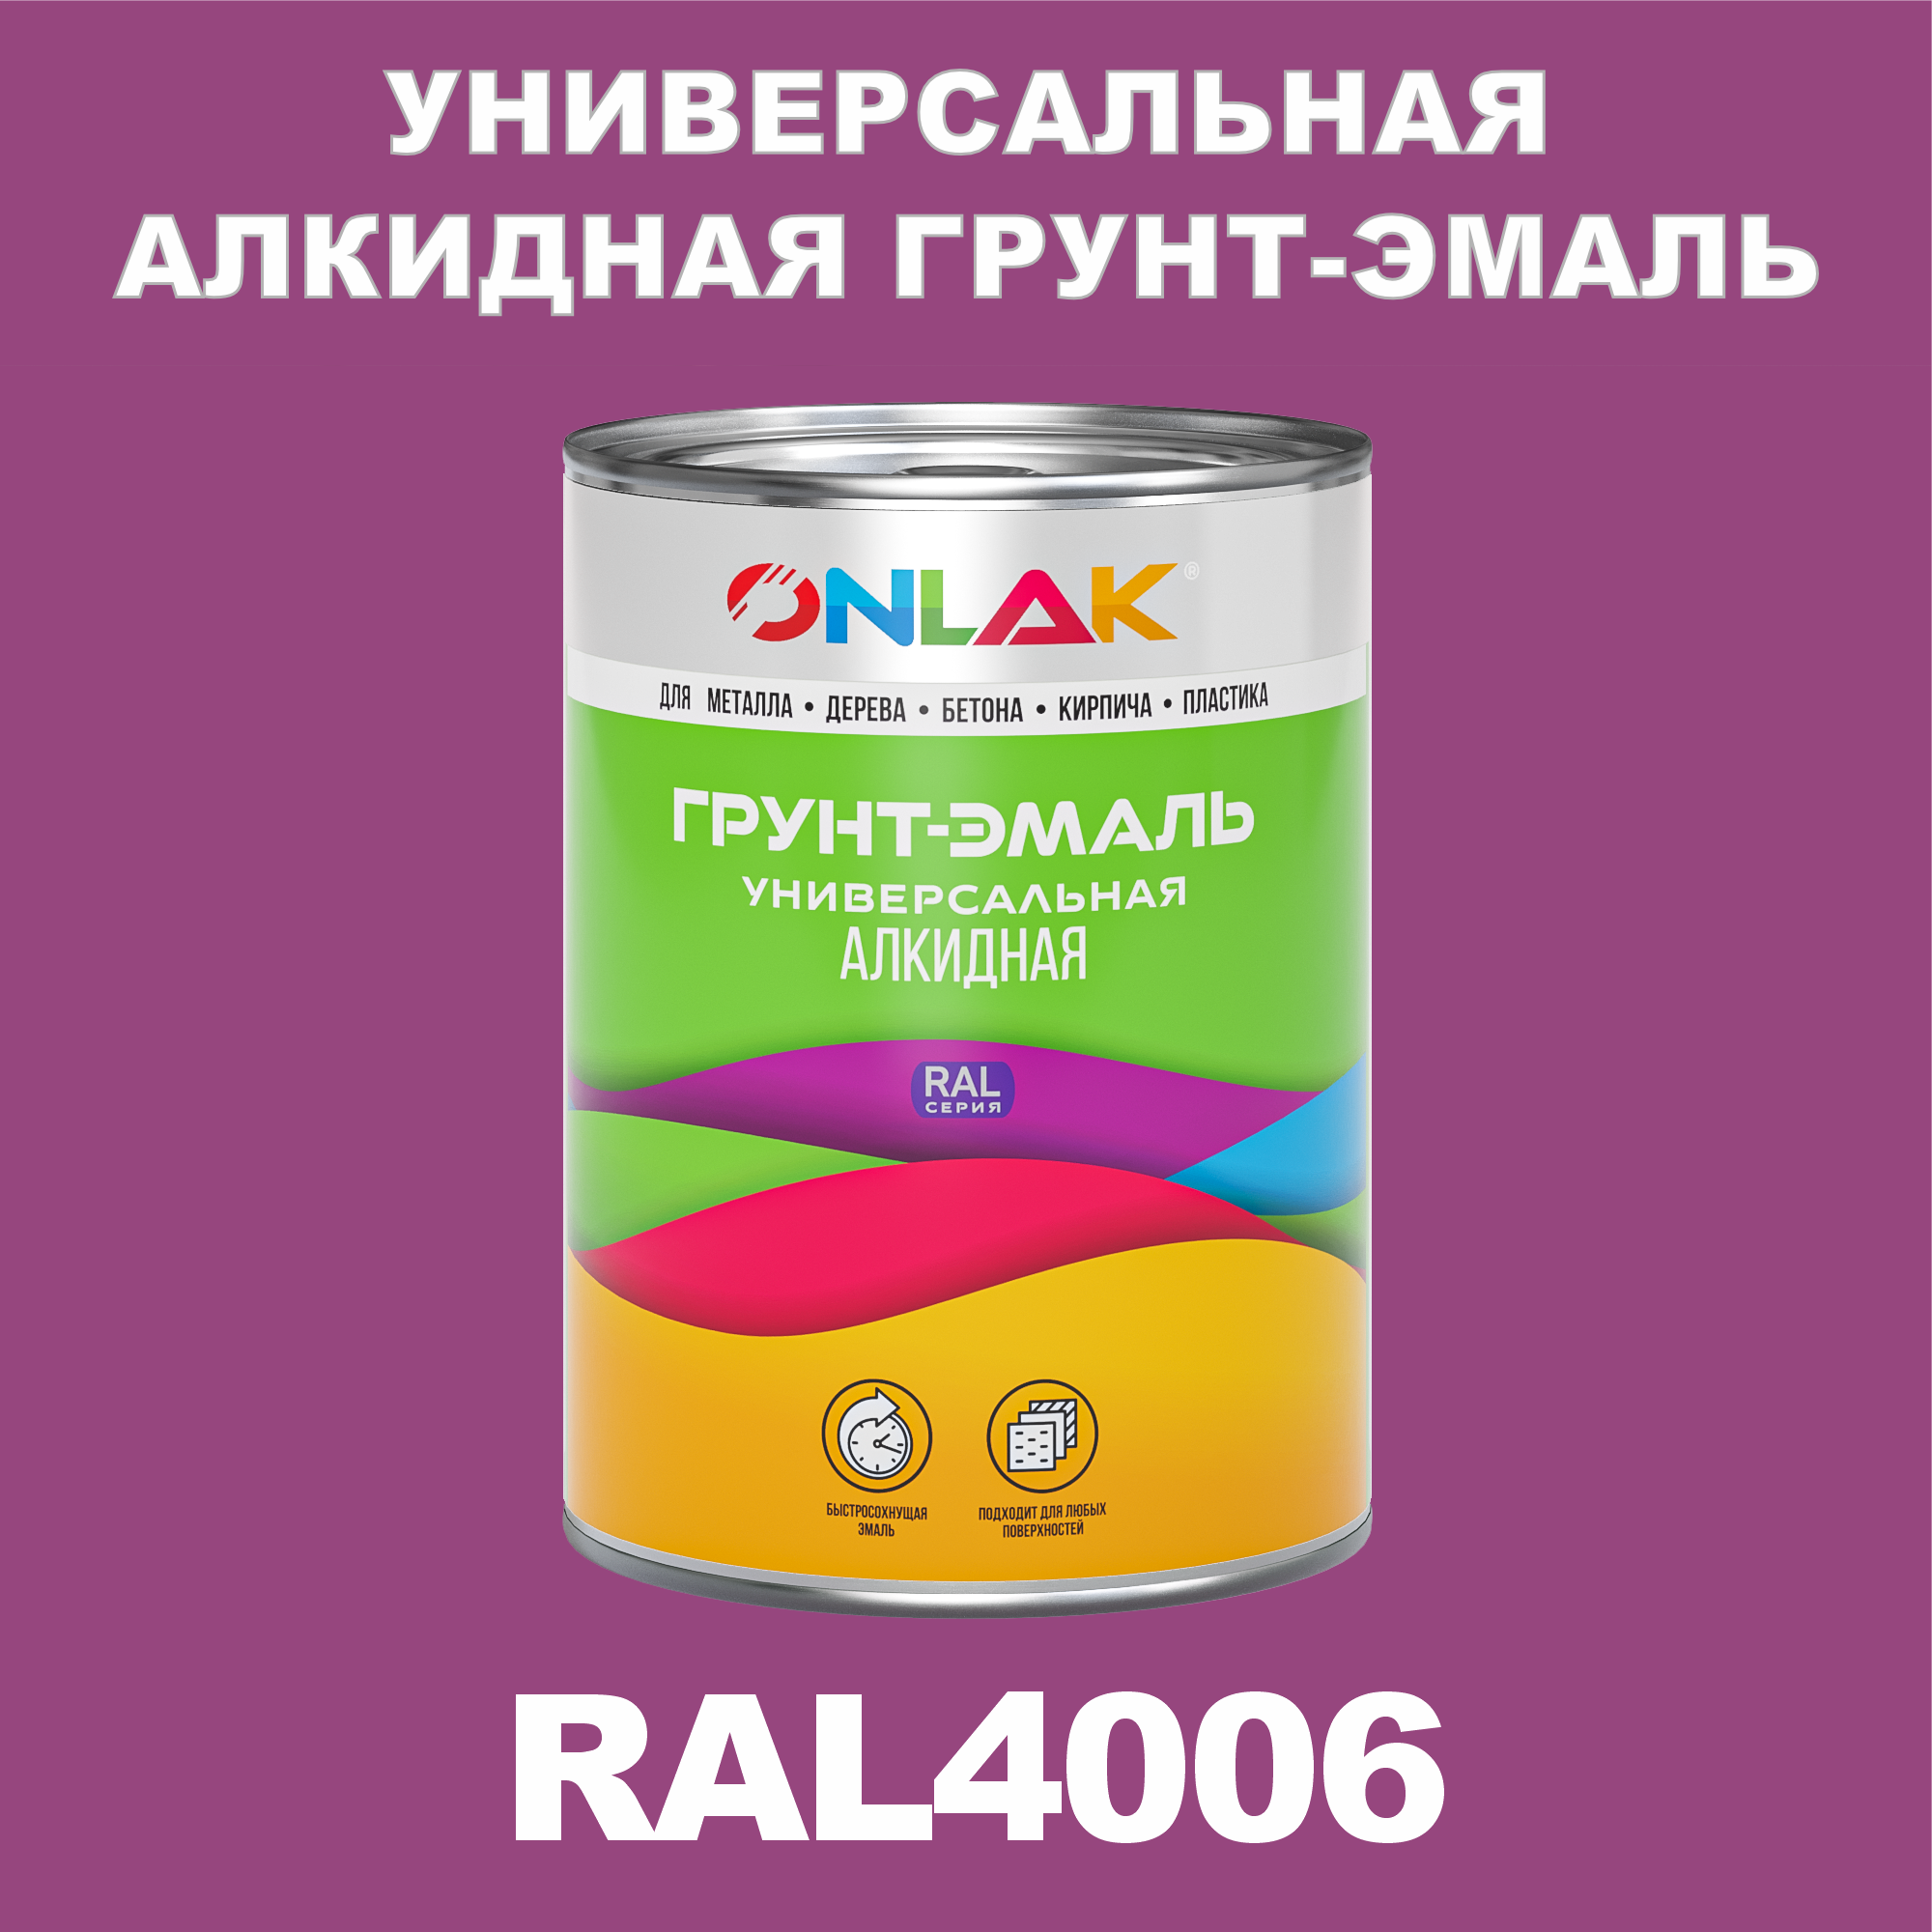 Грунт-эмаль ONLAK 1К RAL4006 антикоррозионная алкидная по металлу по ржавчине 1 кг антикоррозионная грунт эмаль onlak ral 4004 фиолетовый 657 мл